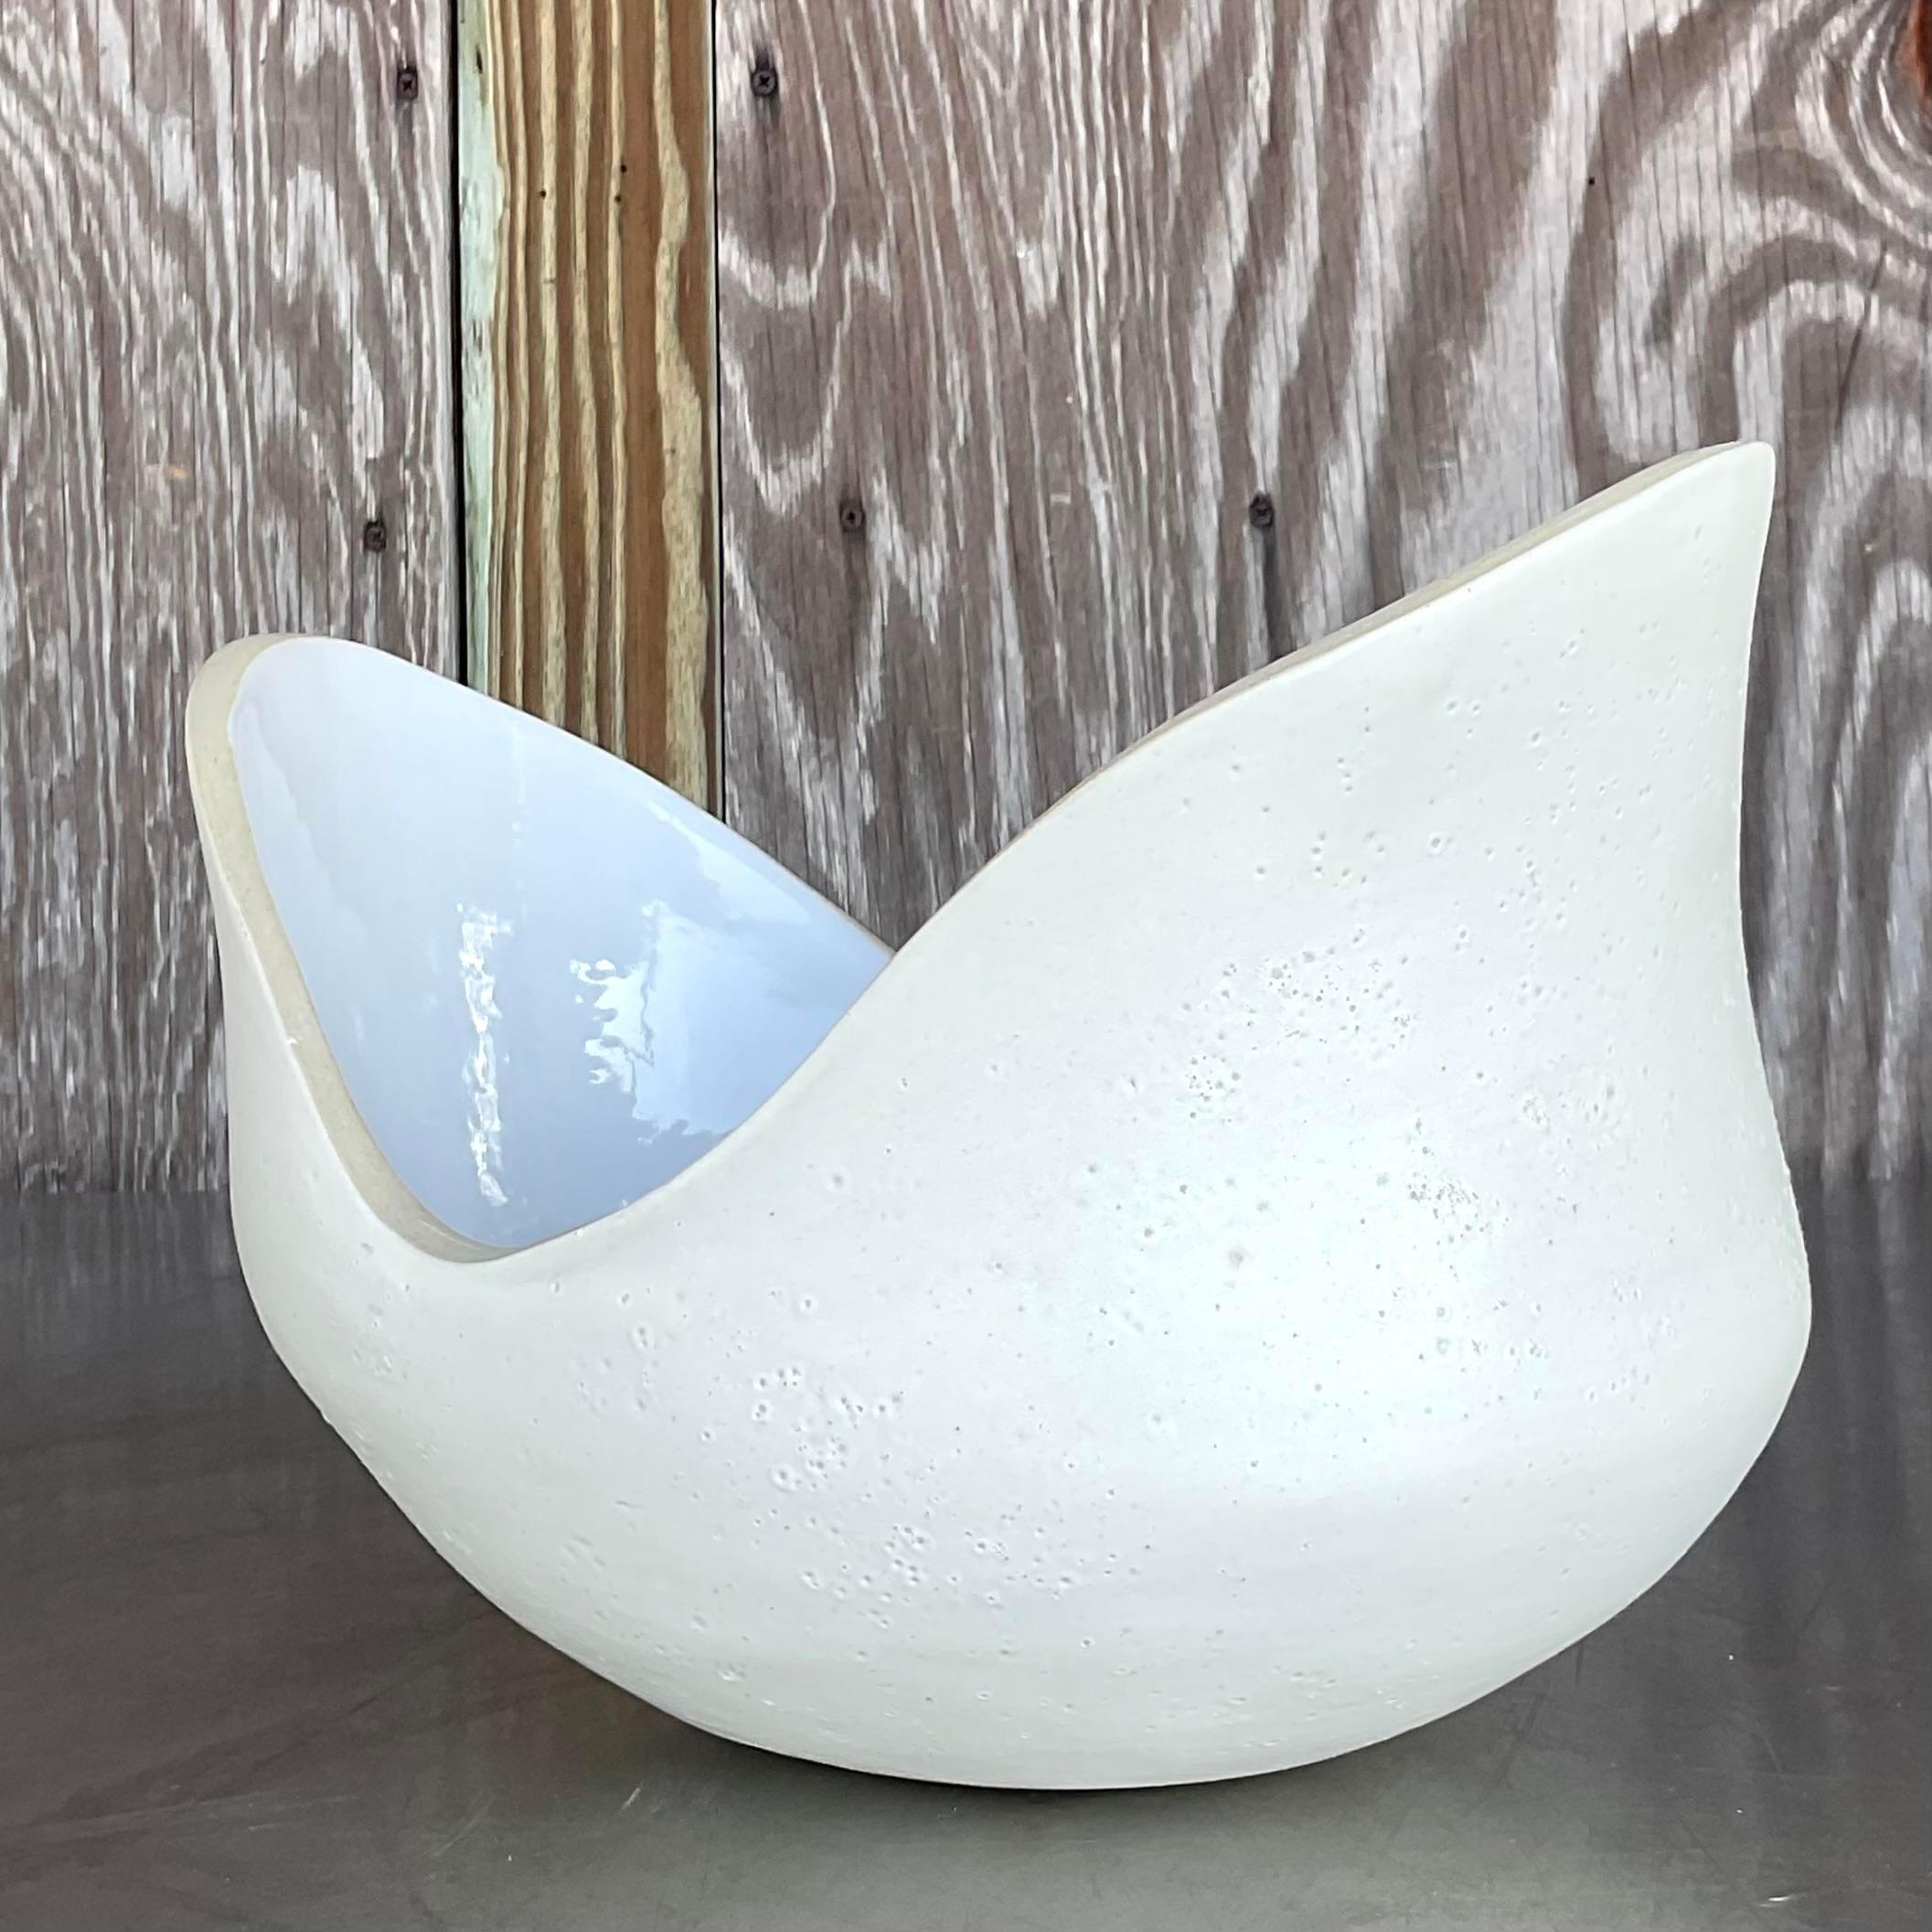 Infuser votre espace avec une touche artistique en utilisant notre Vintage Boho Signed Slab Built Biomorphic Bowl. Fabriqué à la main avec un design unique en forme de dalle, ce bol met en valeur des formes et des textures biomorphiques. Une pièce